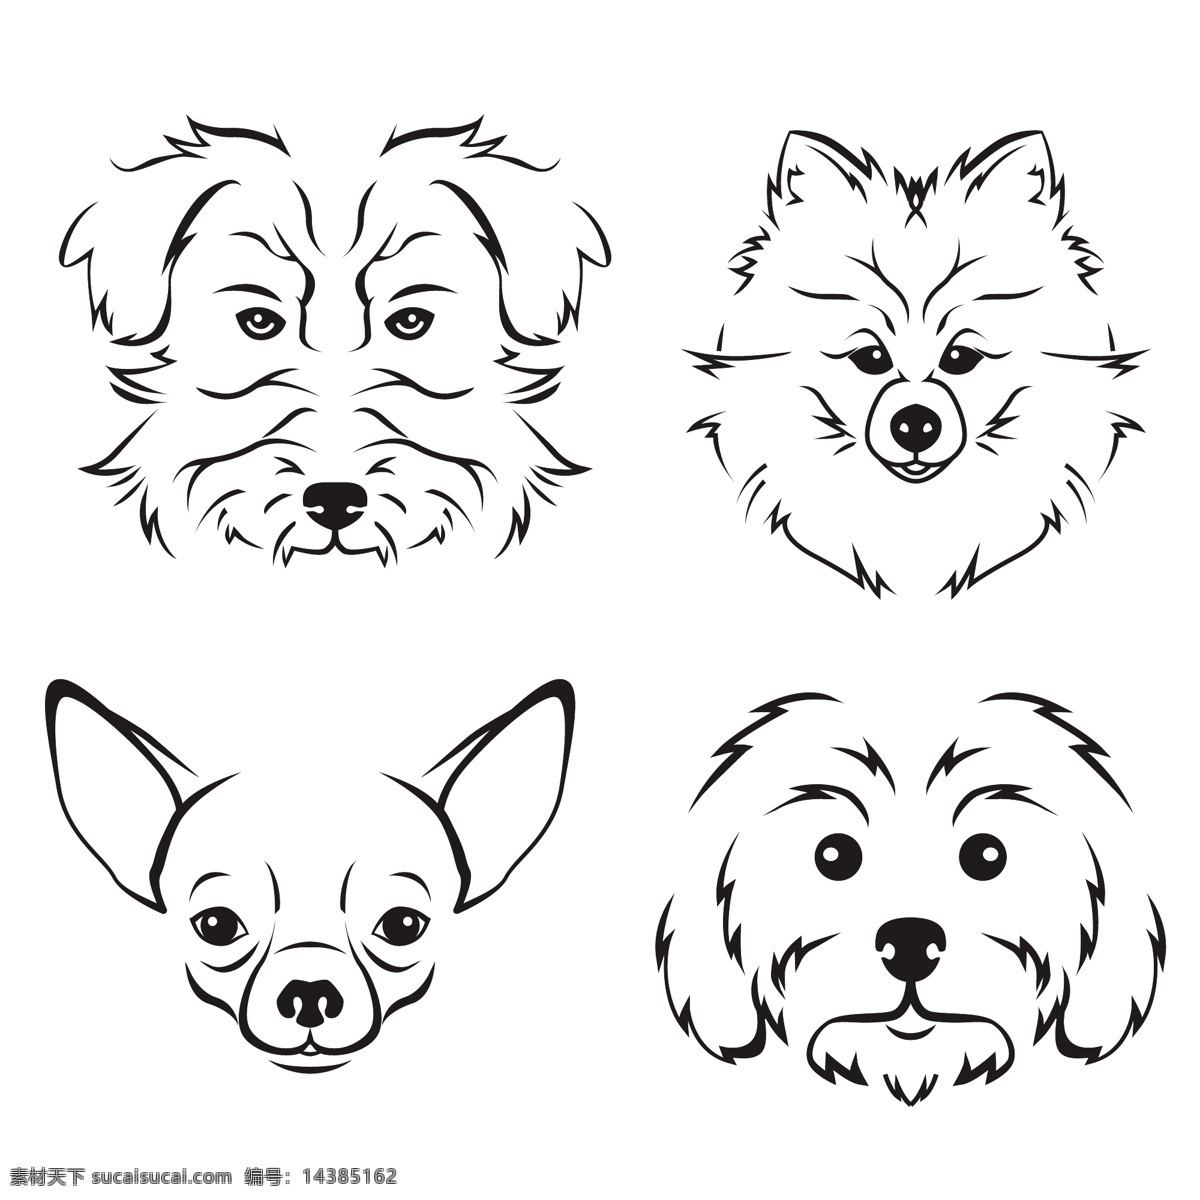 表情 插画 动物 狗 卡通 卡通狗 可爱 可爱宠物 脸 舌头 手绘 品种 面部